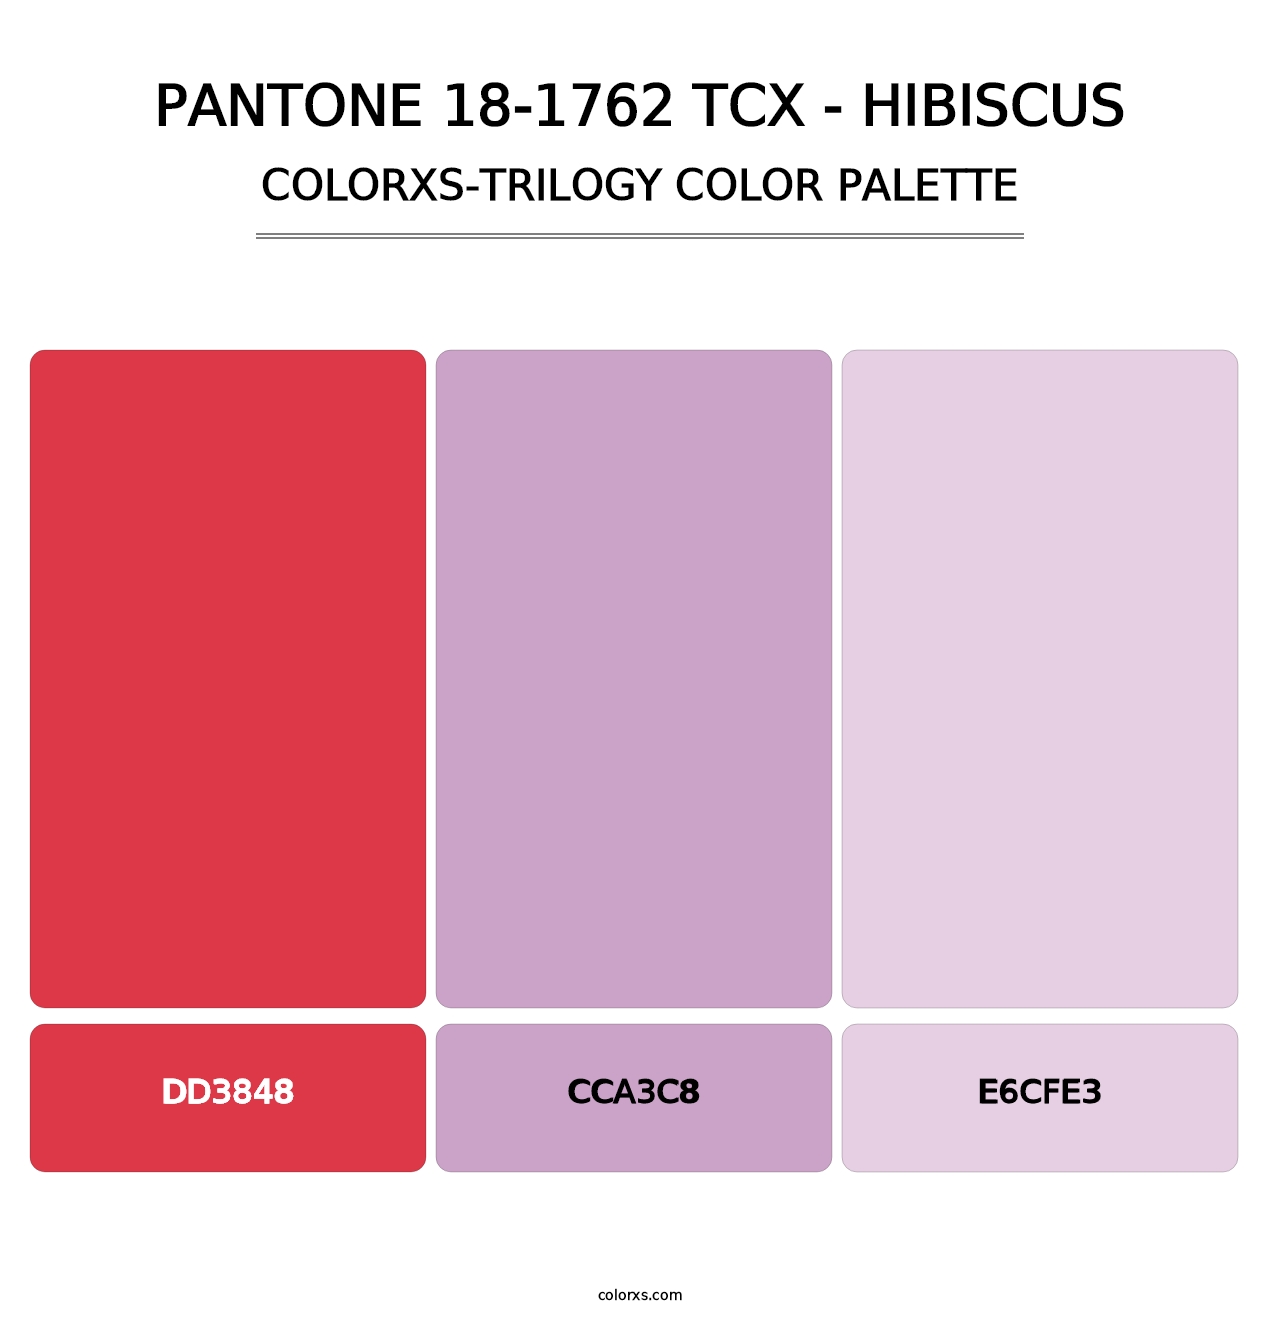 PANTONE 18-1762 TCX - Hibiscus - Colorxs Trilogy Palette